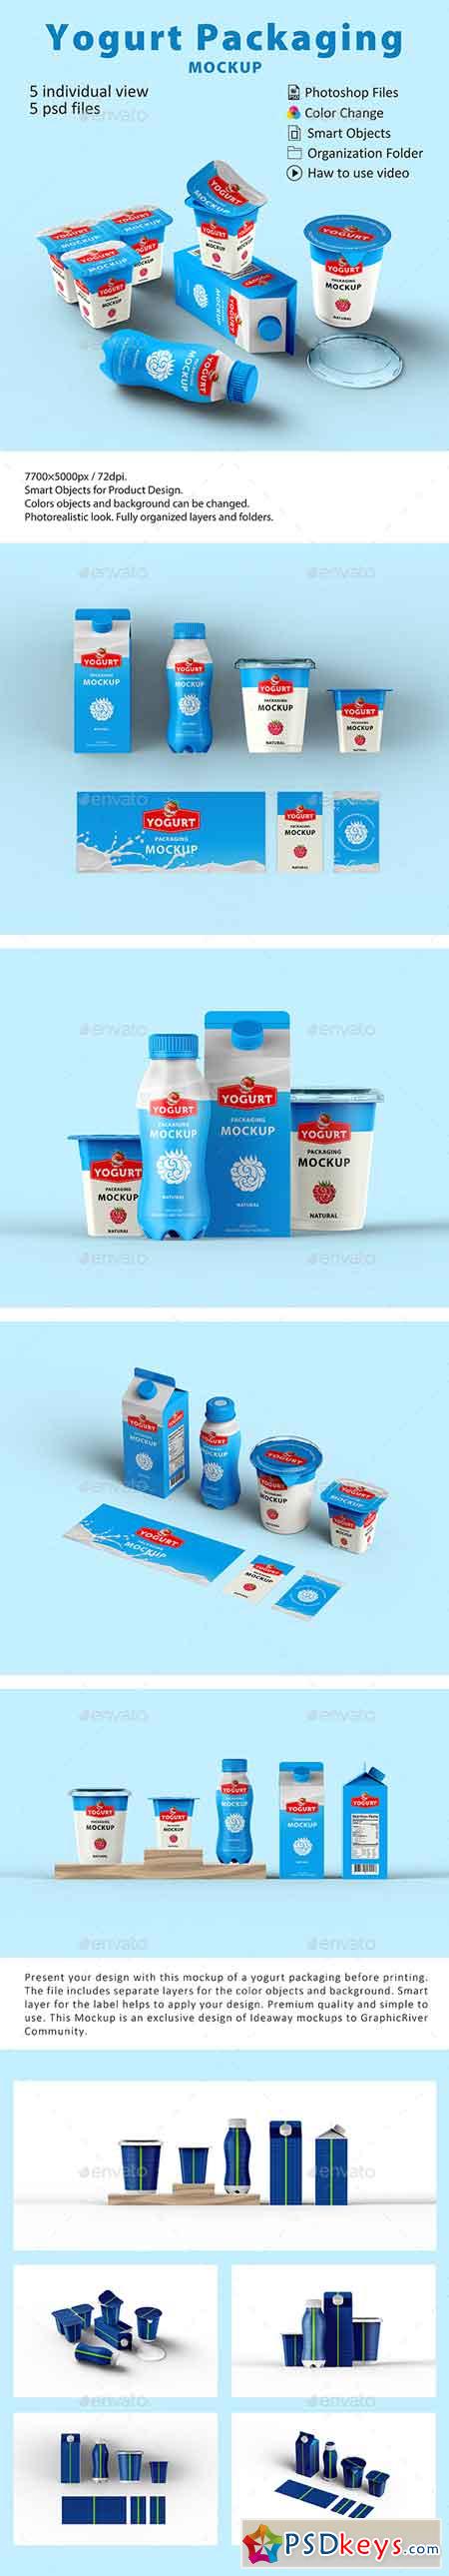 Yogurt Packaging Mockup 22658614